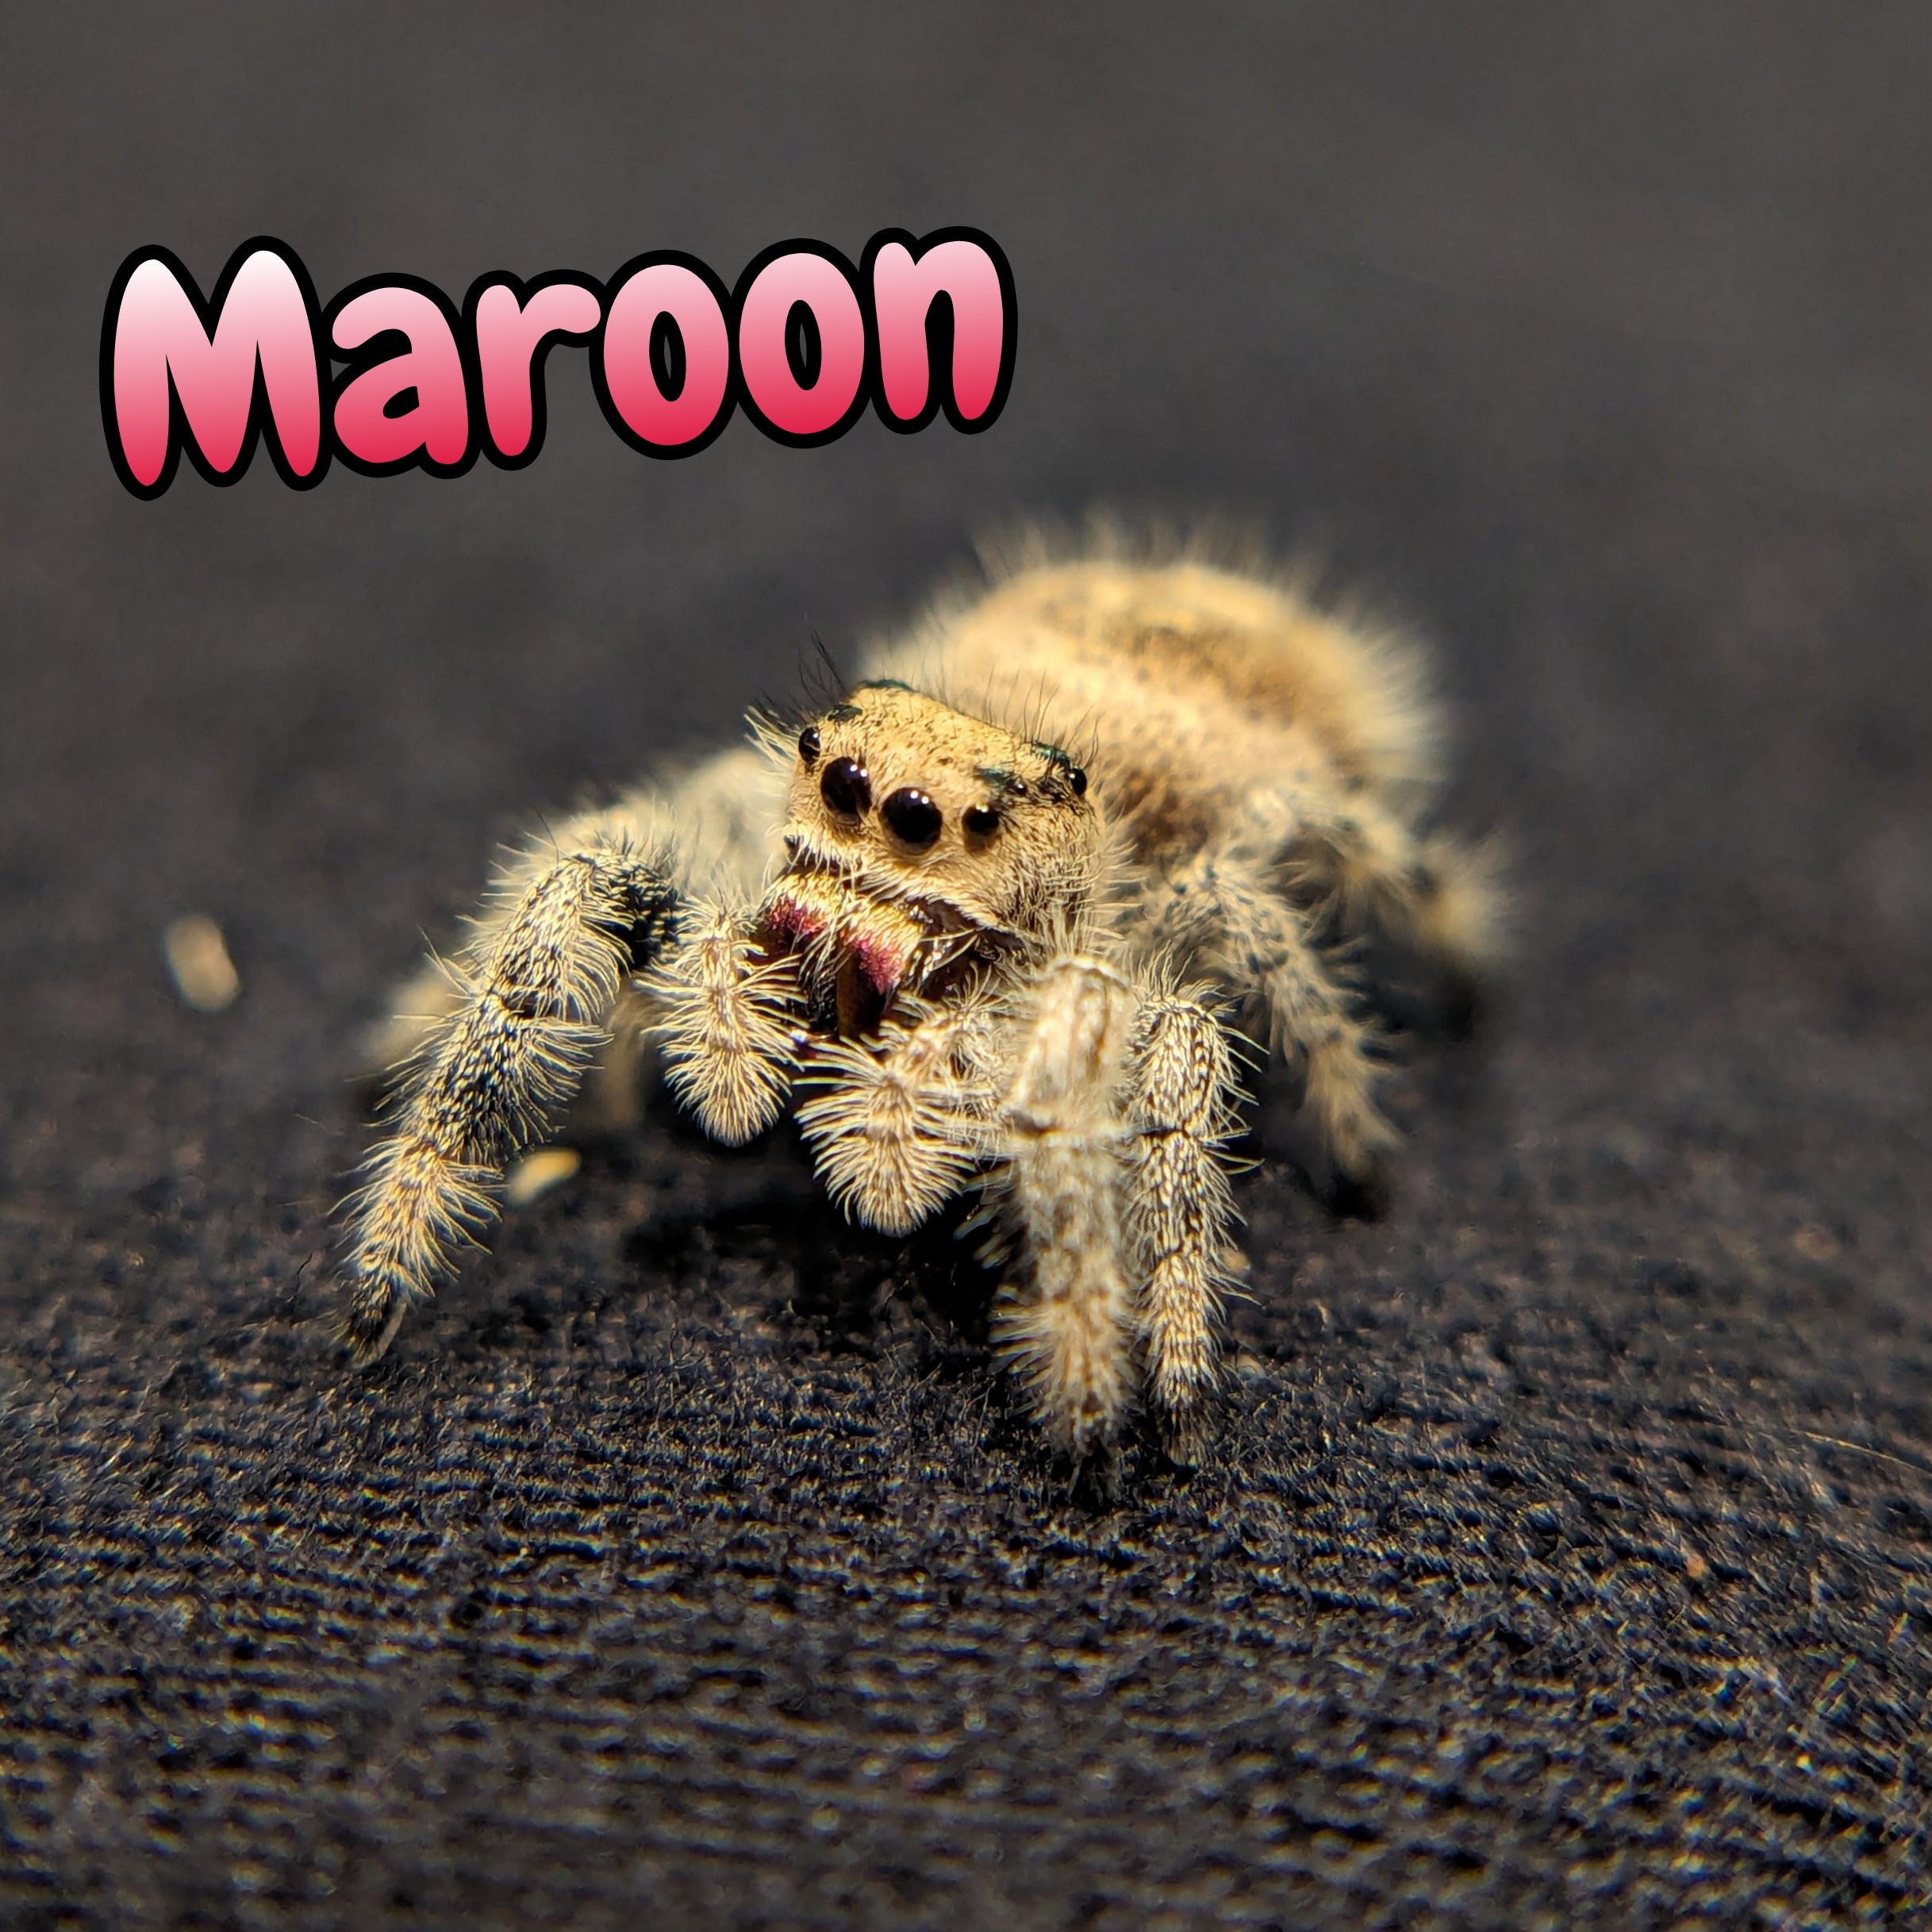 Regal Jumping Spider "Maroon"